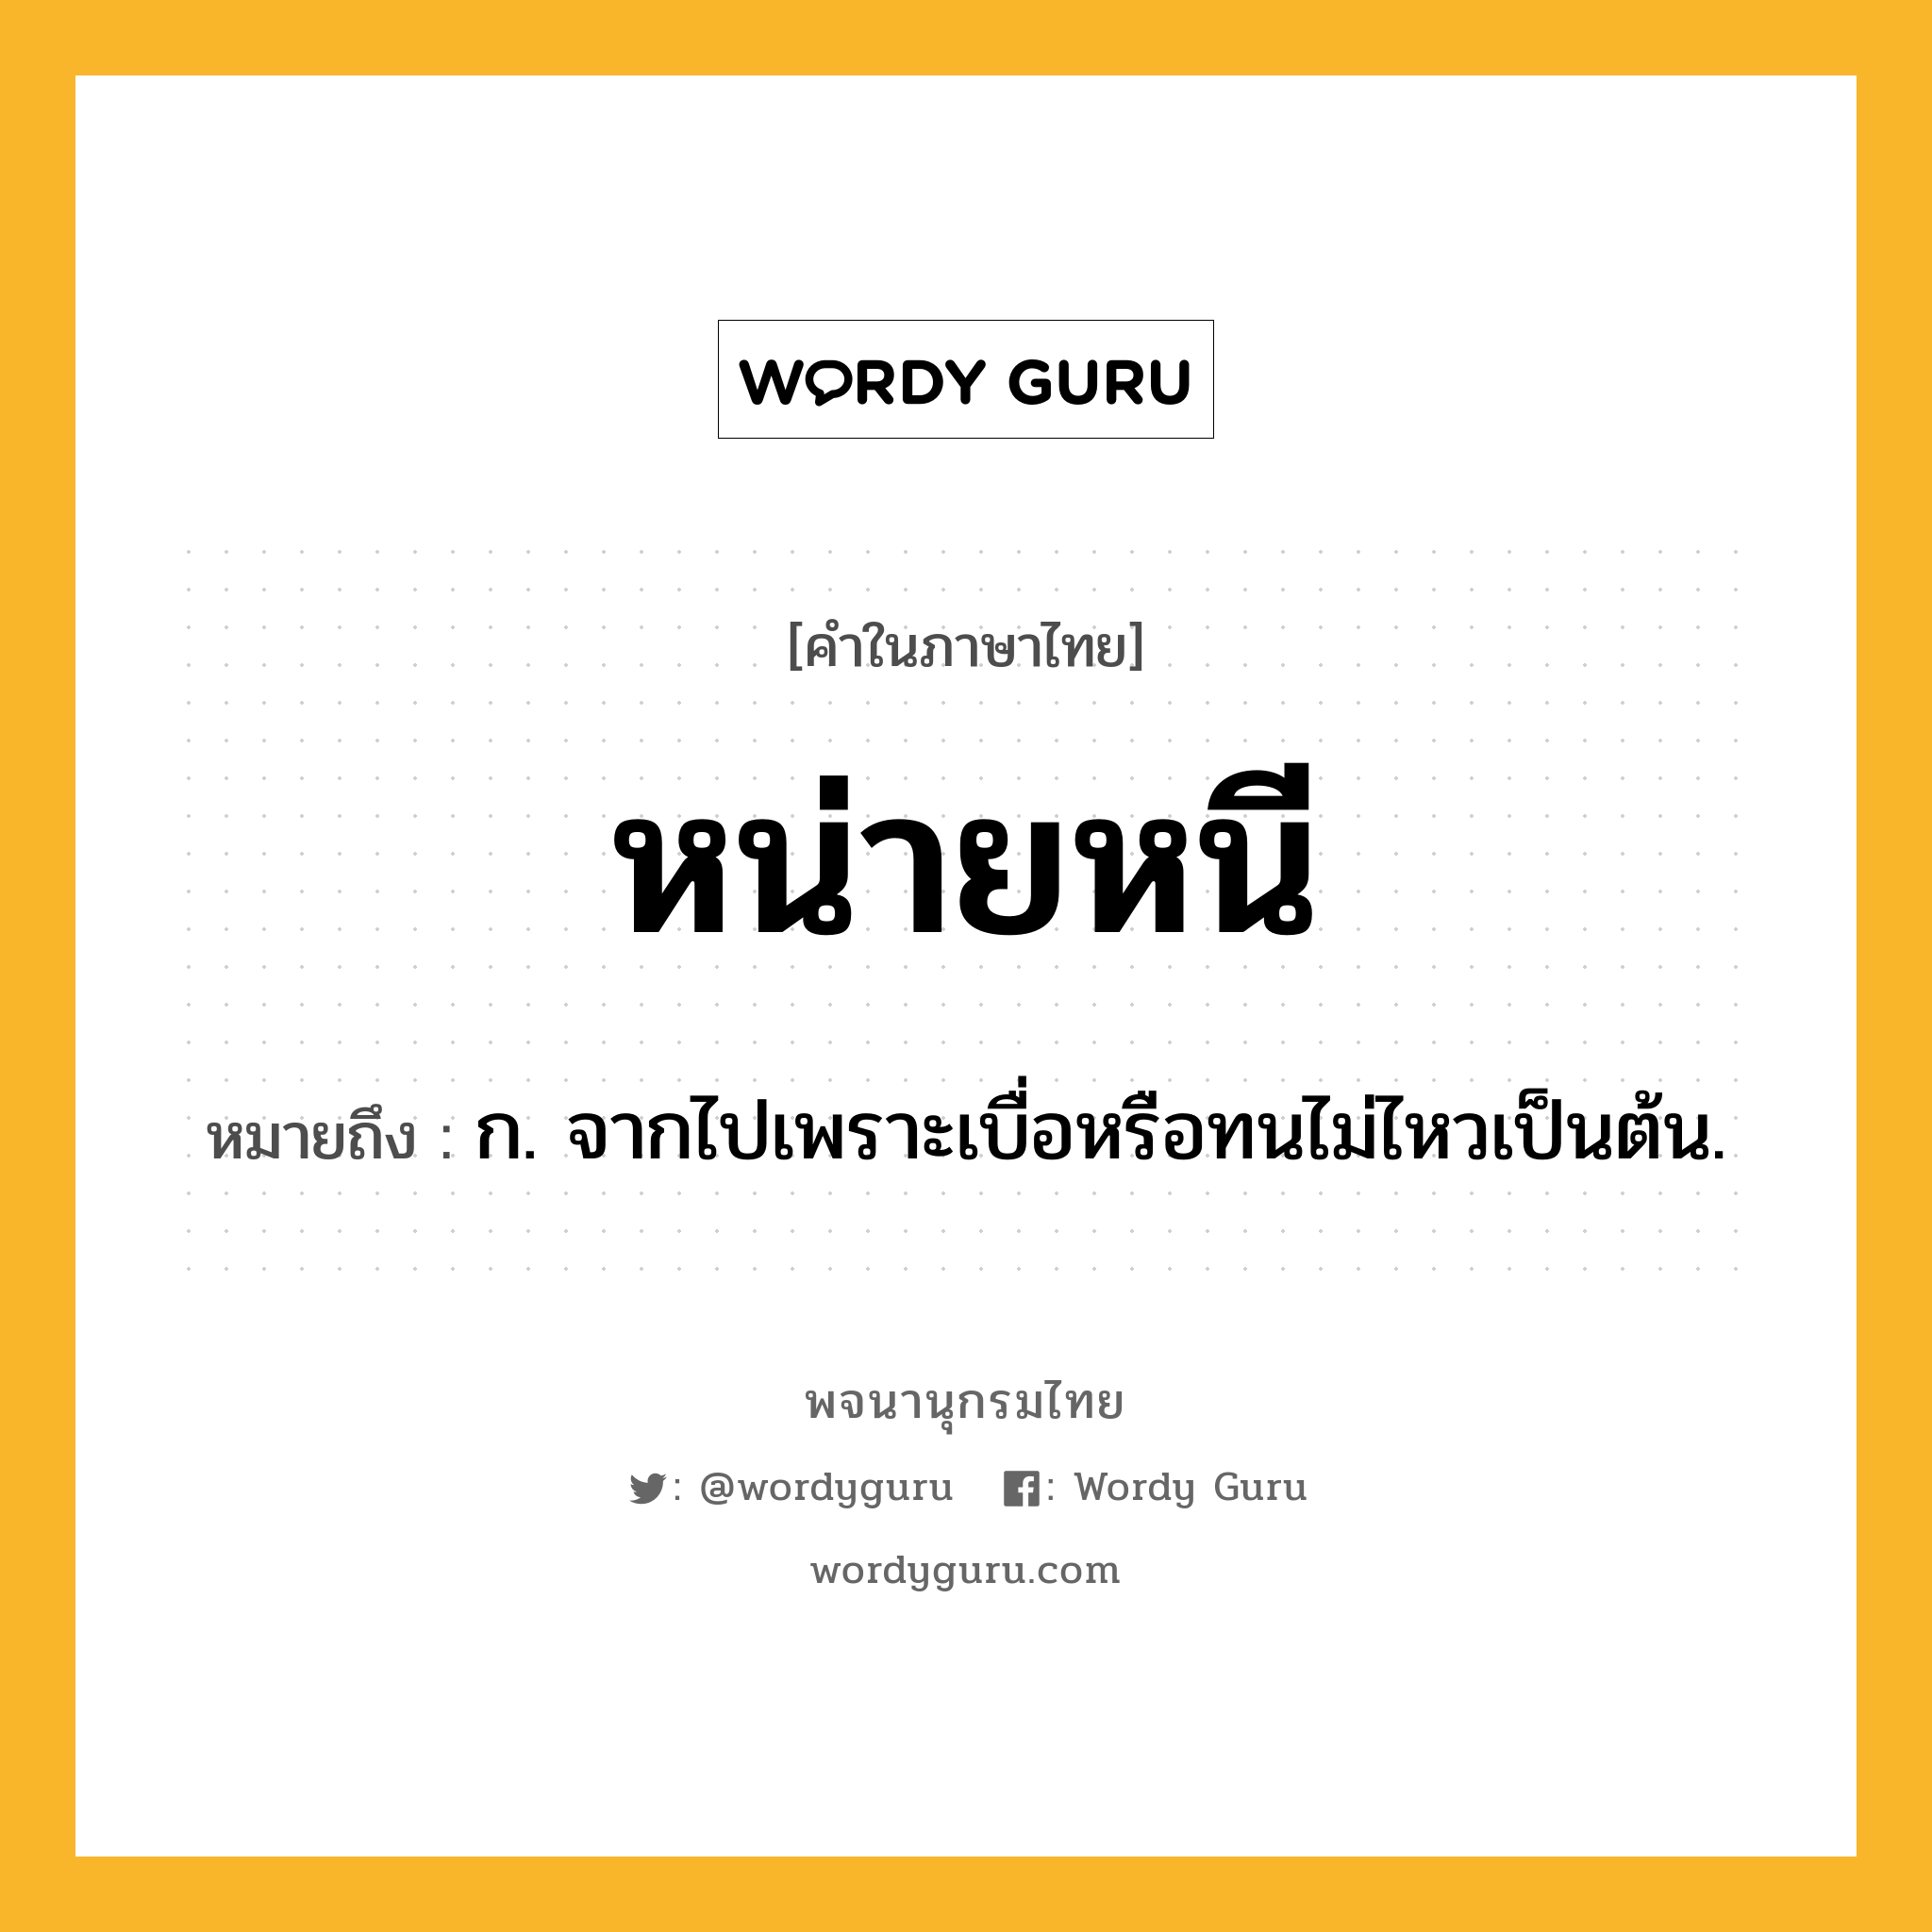 หน่ายหนี หมายถึงอะไร?, คำในภาษาไทย หน่ายหนี หมายถึง ก. จากไปเพราะเบื่อหรือทนไม่ไหวเป็นต้น.